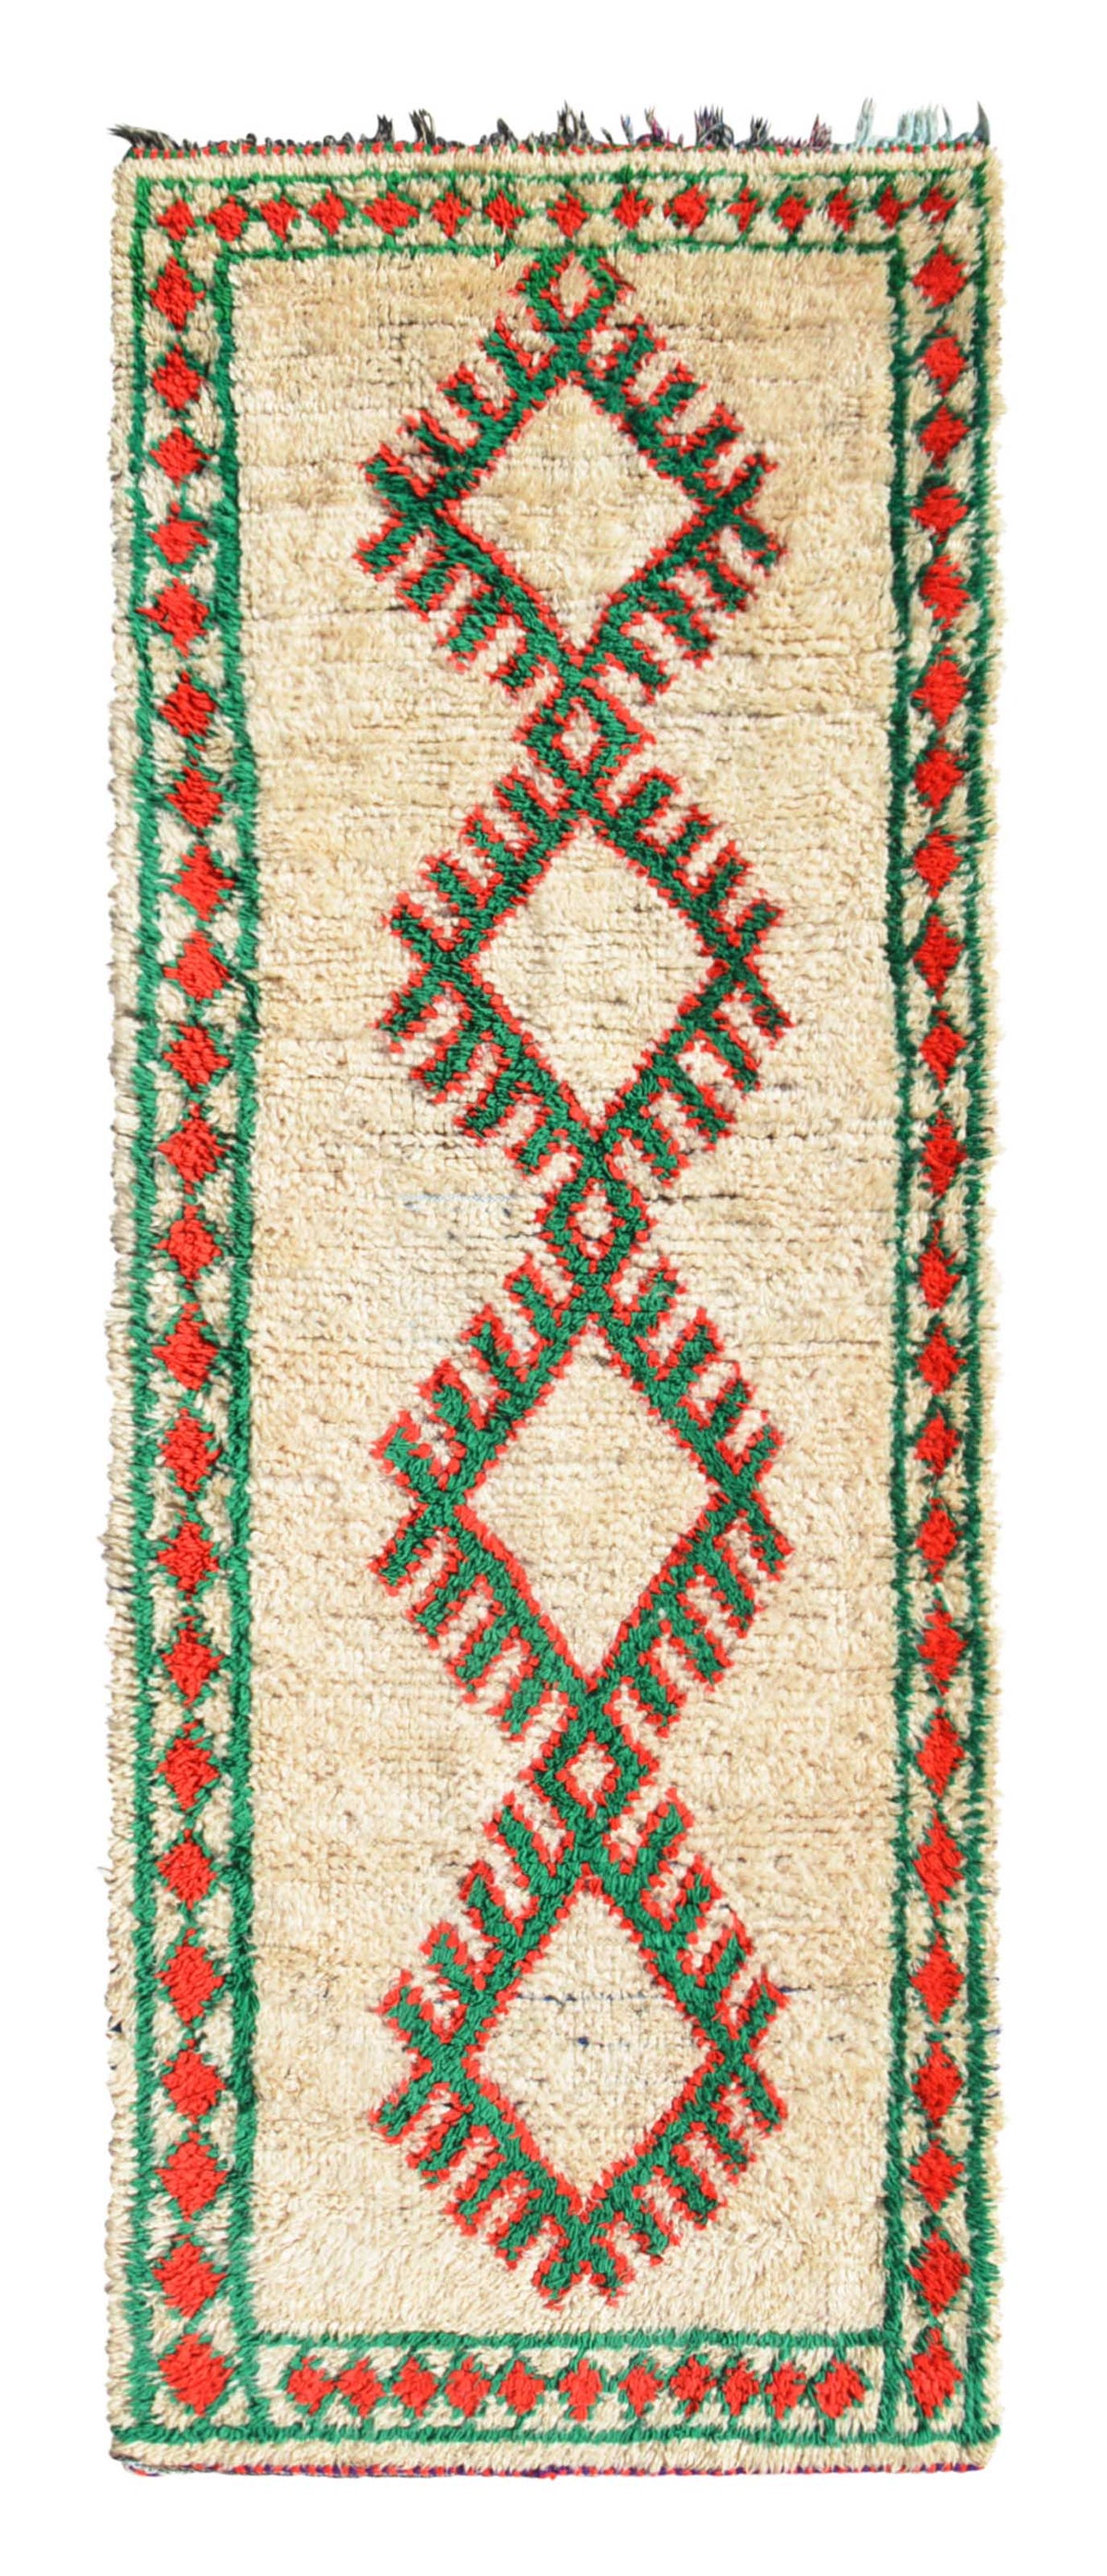 Vintage Moroccan Rug Vintage Moroccan Rug - Hand Knotted Rugs - Illuminate Collective illuminate collective 